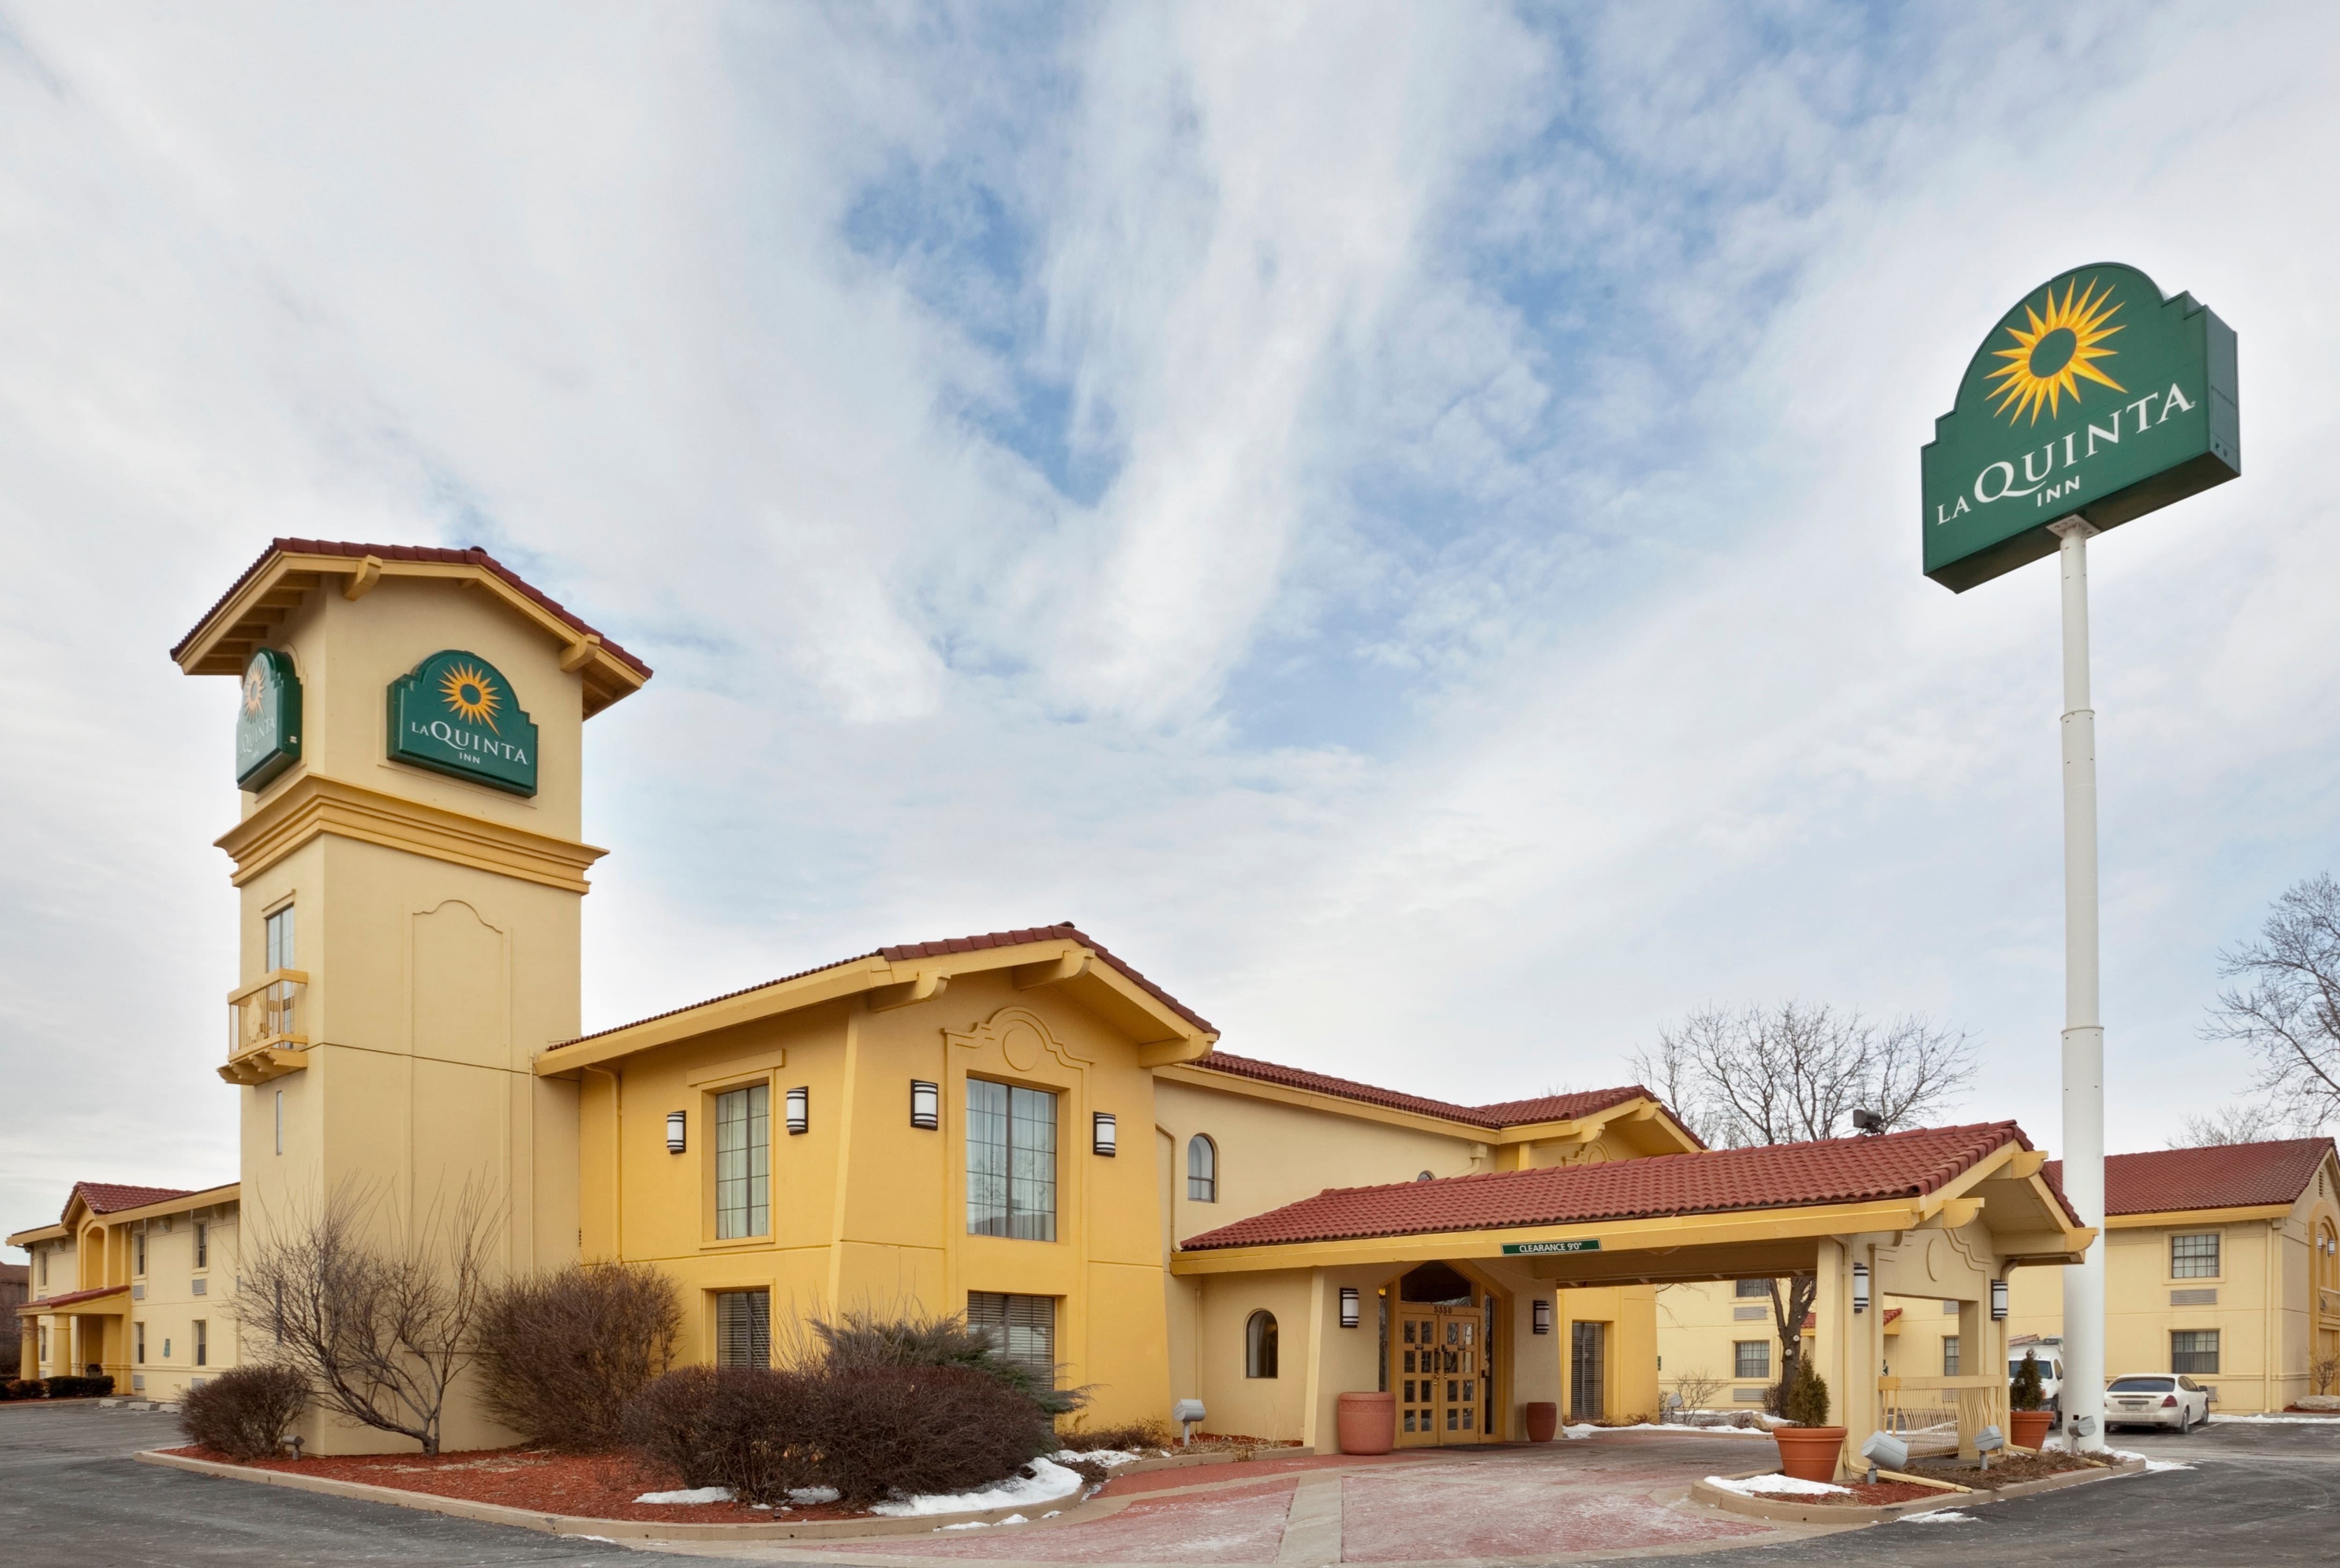 La Quinta Inn by Wyndham Omaha West | Omaha, NE Hotels